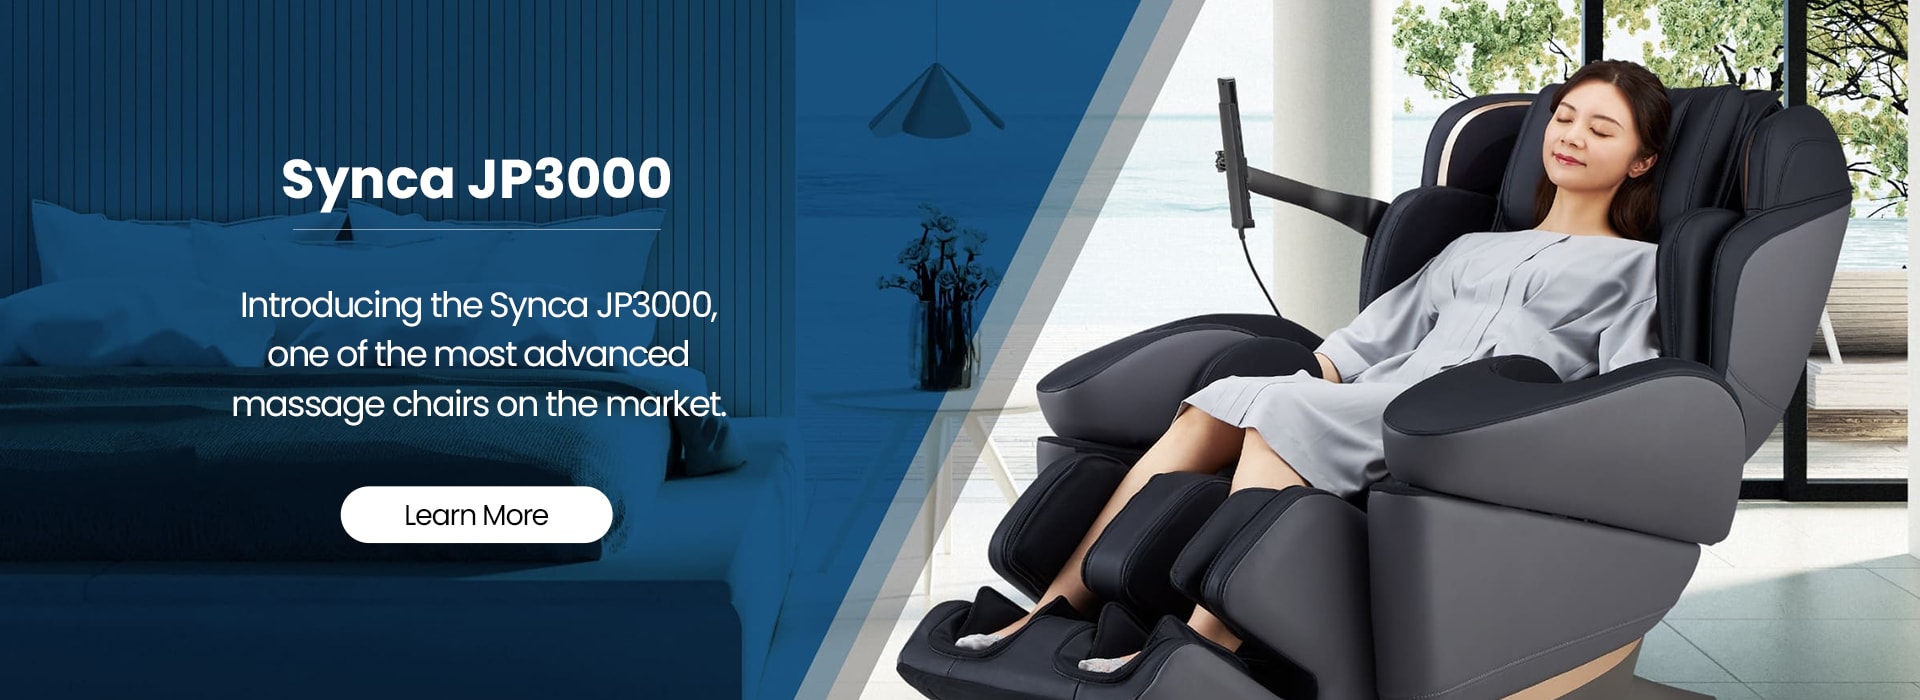 Synca JP3000 Massage Chair1621243260e1af0c20-2